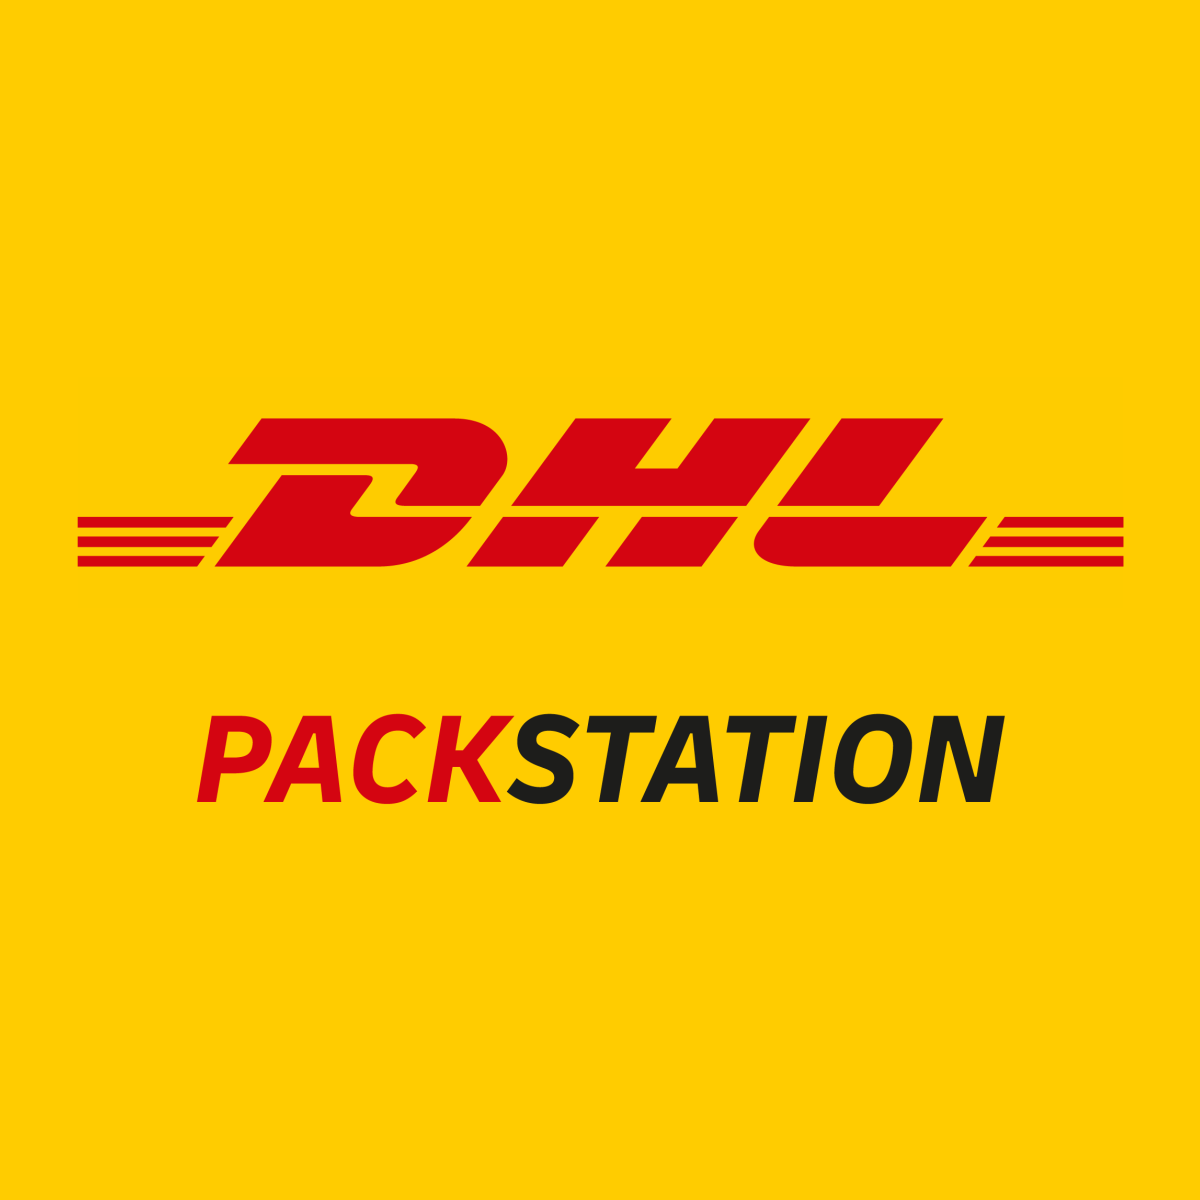 DHL Packstation - DHL Packstation | Shopify App Store